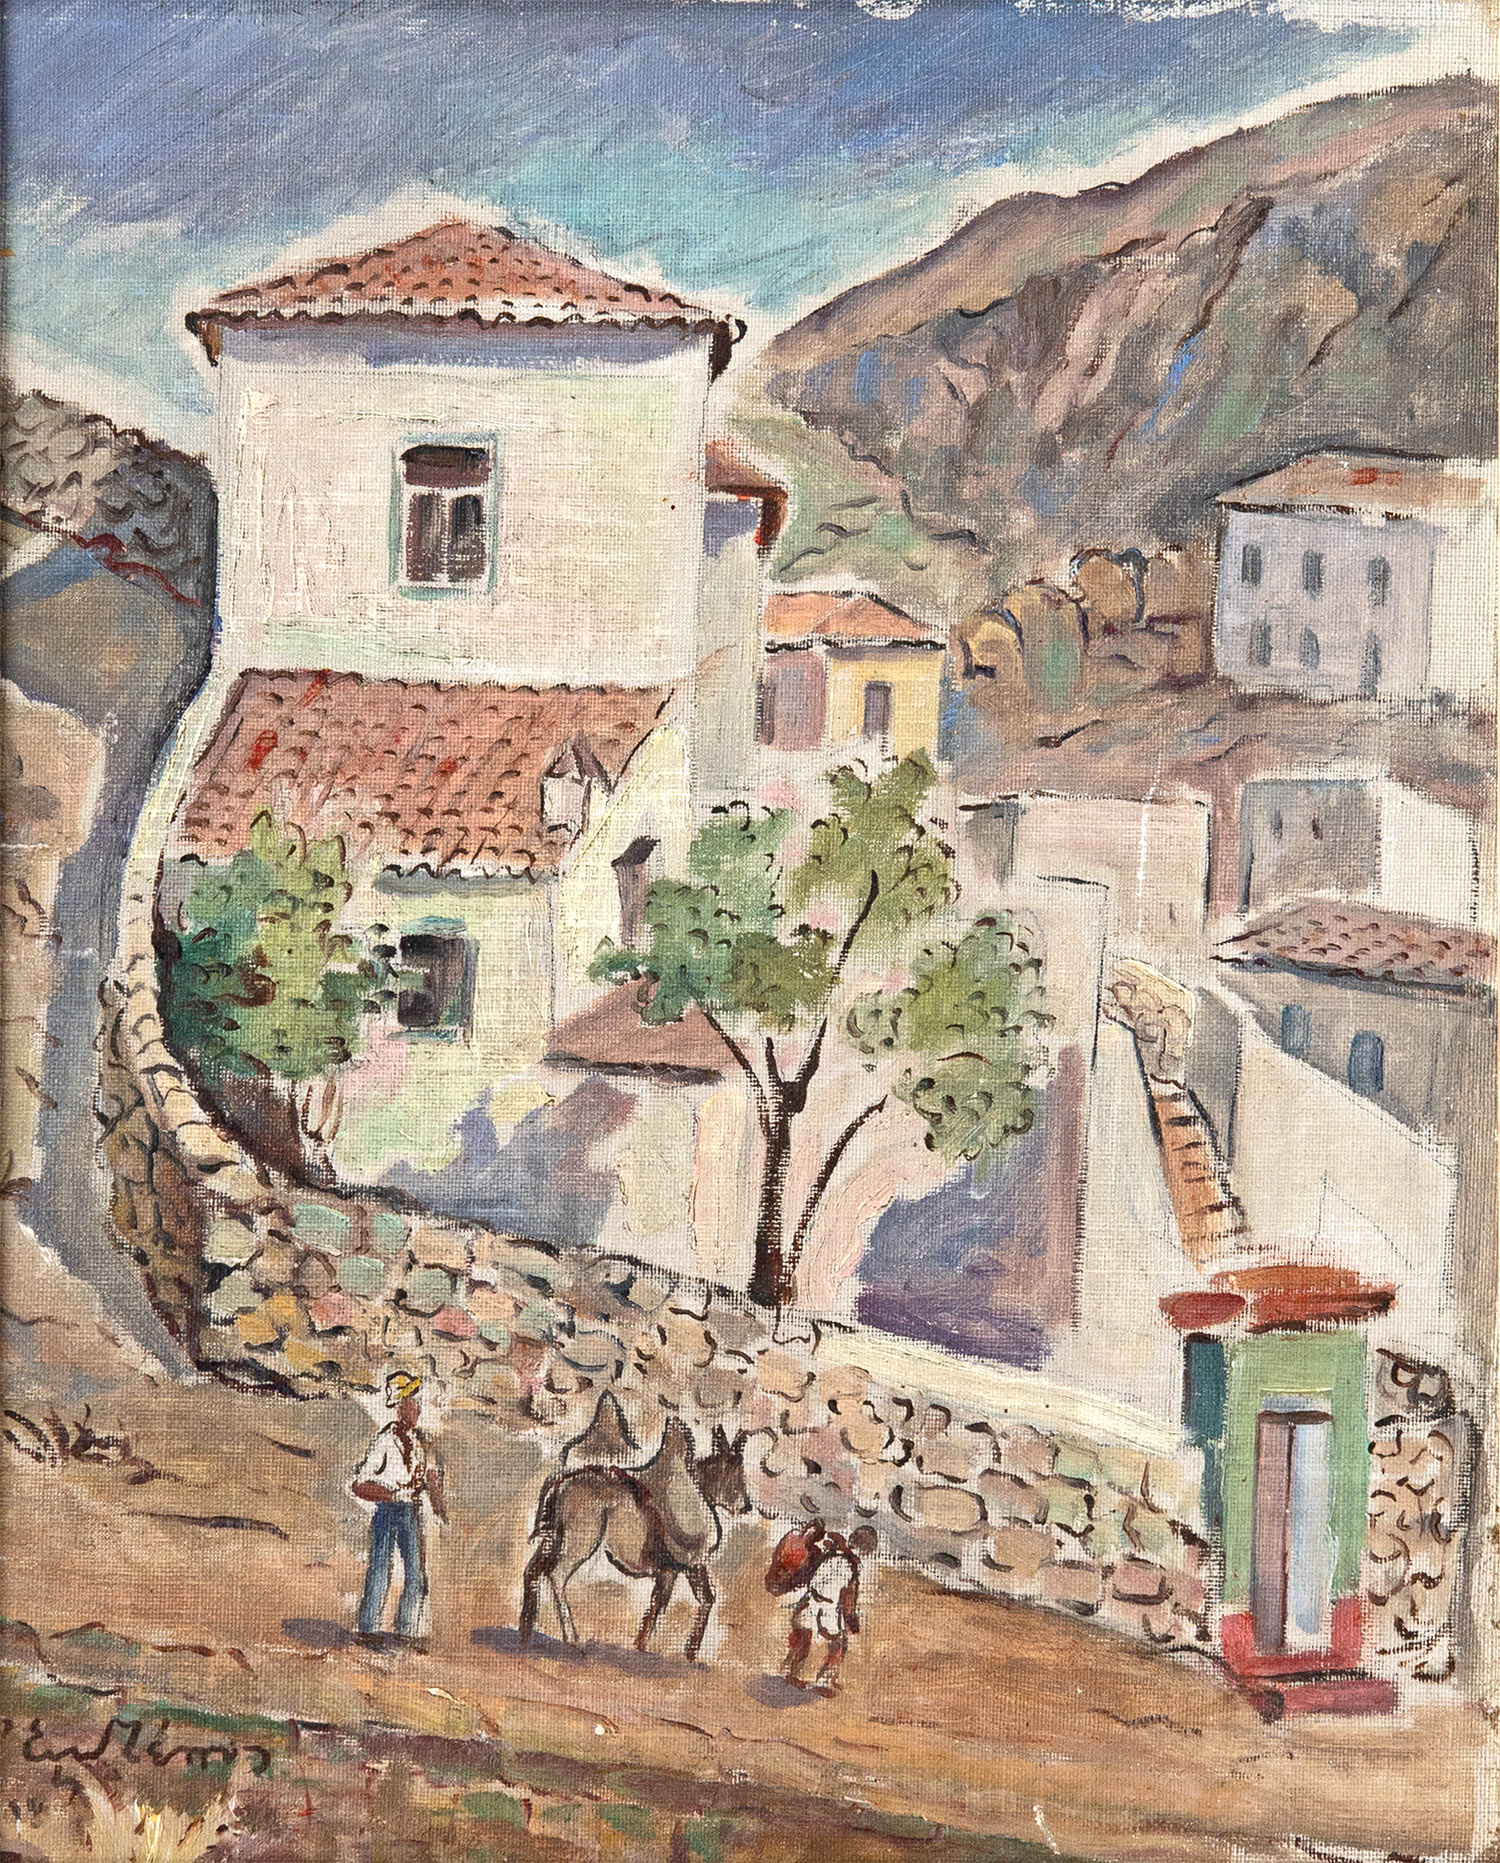 ΖΕΠΟΣ, Εμμανουήλ, 1905-1995.